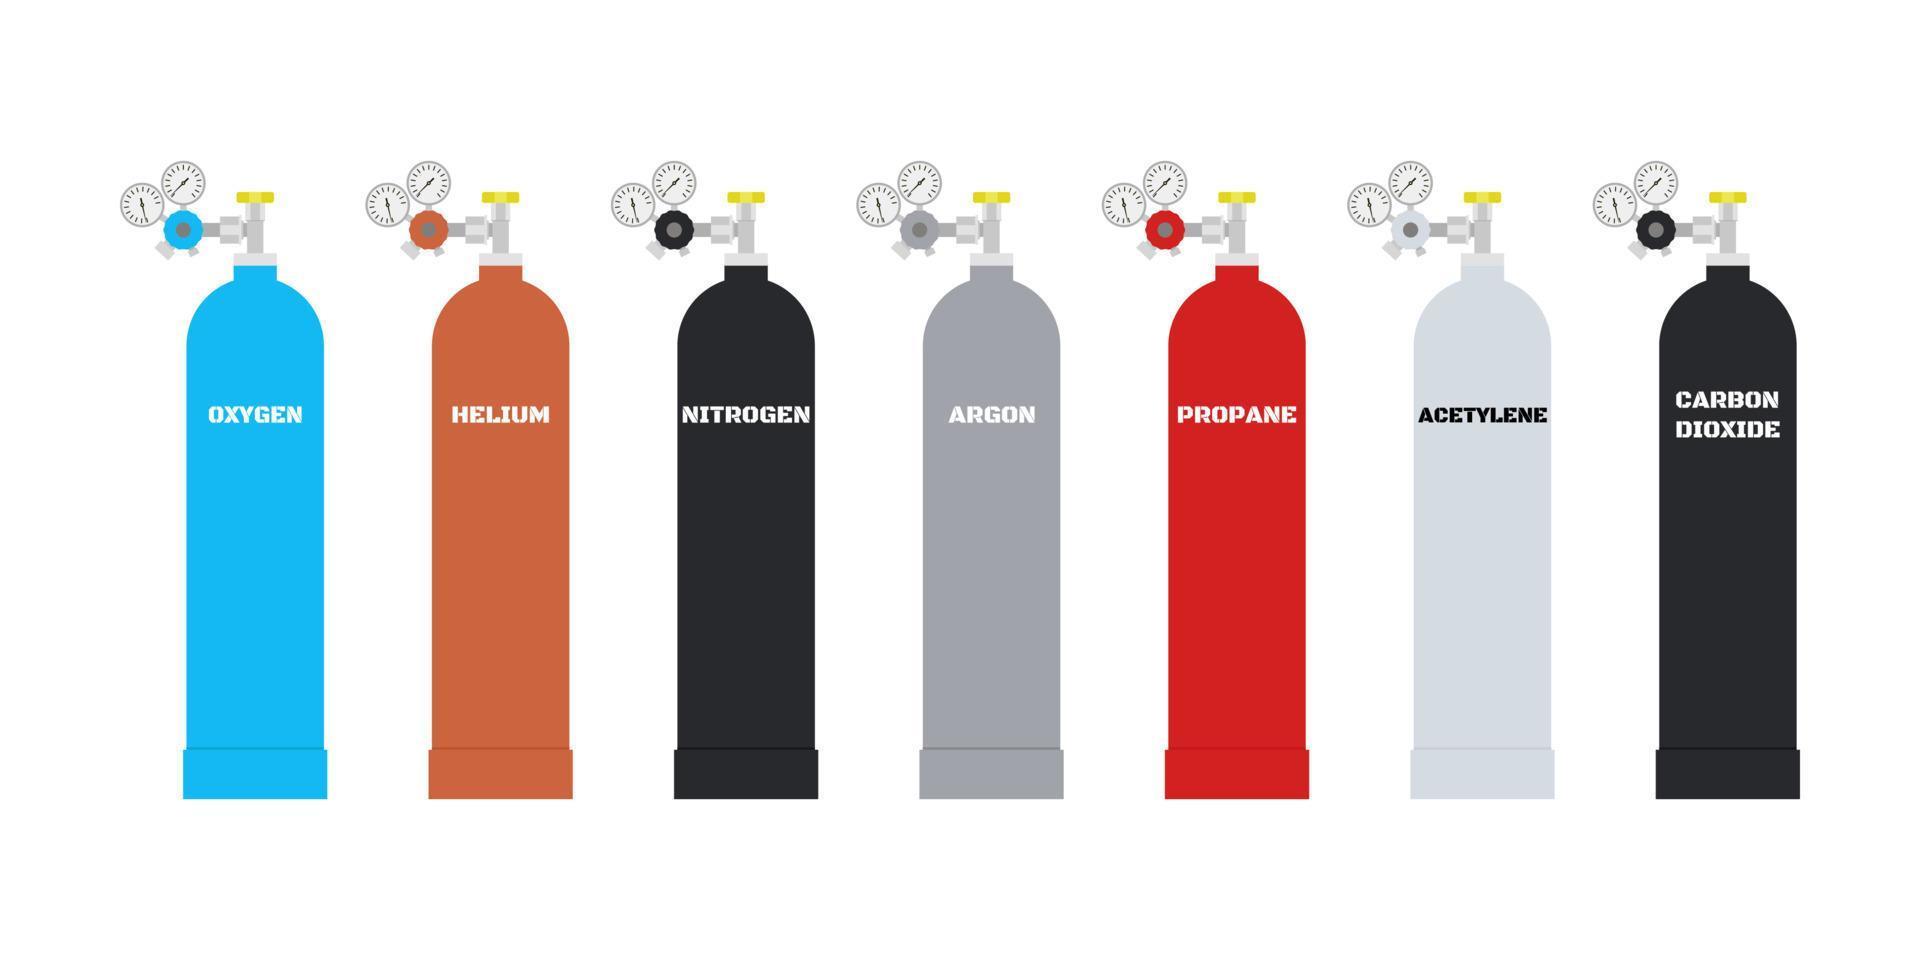 bombole con diversi tipi di gas liquido. contenitore di gas per palloncini. ossigeno, elio, azoto, argon, propano, acetilene e anidride carbonica in diversi colori. illustrazione vettoriale